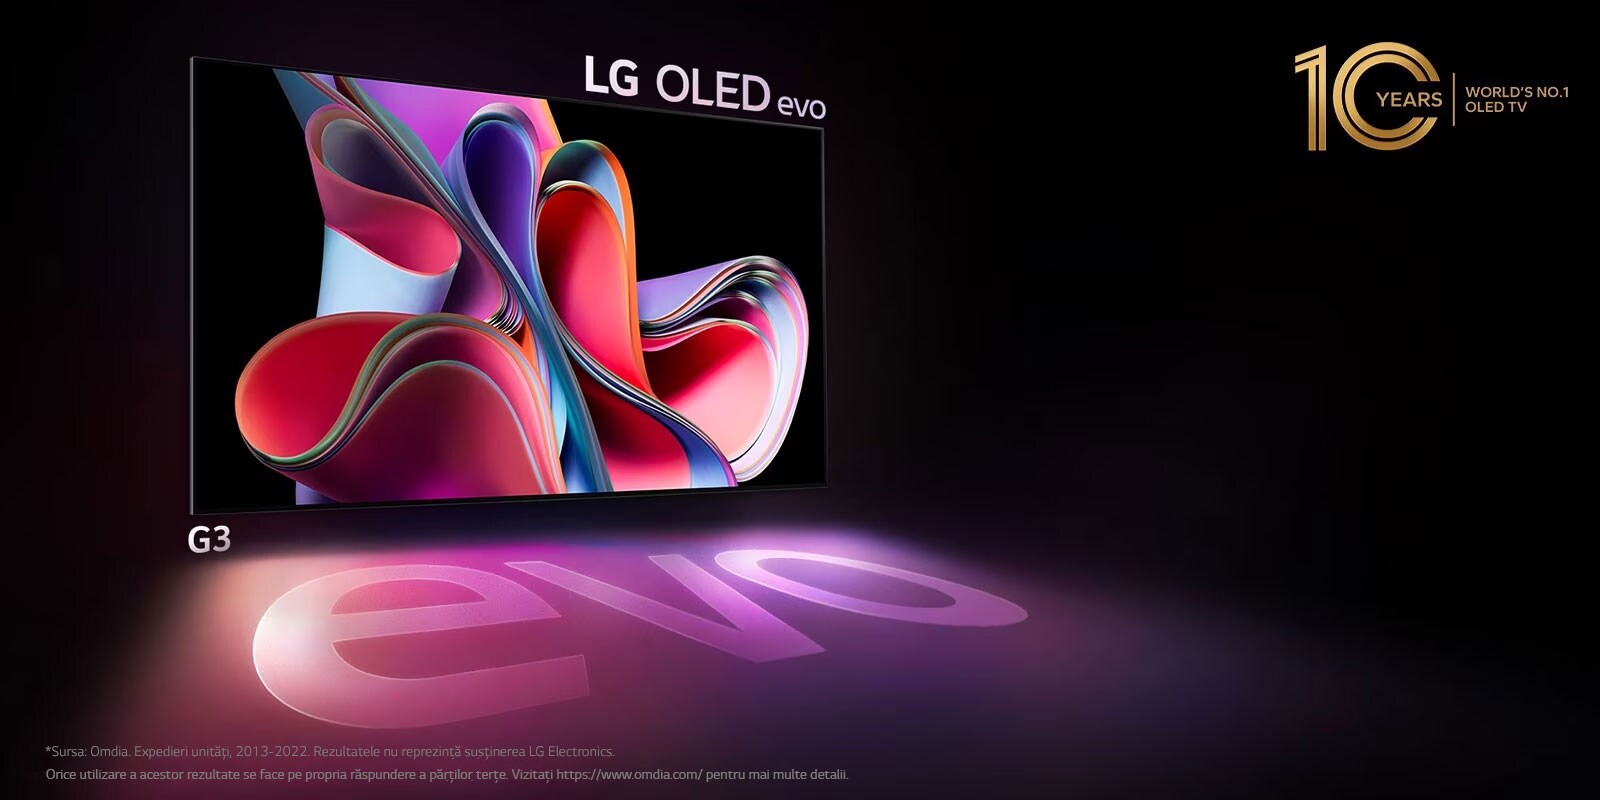 O imagine cu LG OLED G3 pe un fundal negru prezintă o ilustrație abstractă din roșu strălucitor și mov. Ecranul proiectează o umbră color care prezintă cuvântul „evo”. Emblema „Televizorul OLED nr. 1 în lume timp de 10 ani” se află în colțul din stânga sus a imaginii. 